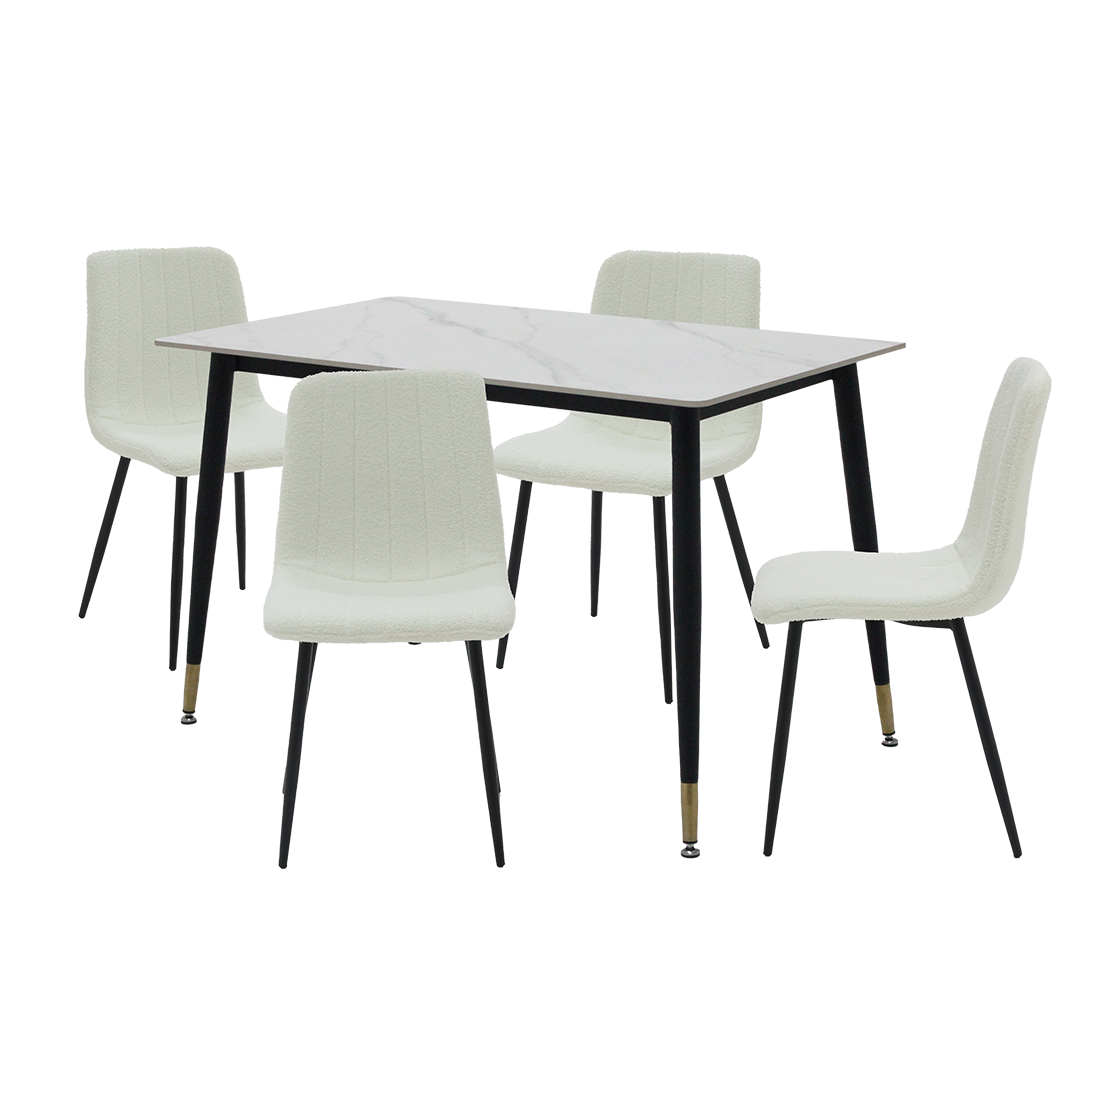 ชุดโต๊ะอาหารรุ่น Charisma สีขาว & เก้าอี้ Layko สีขาว x401